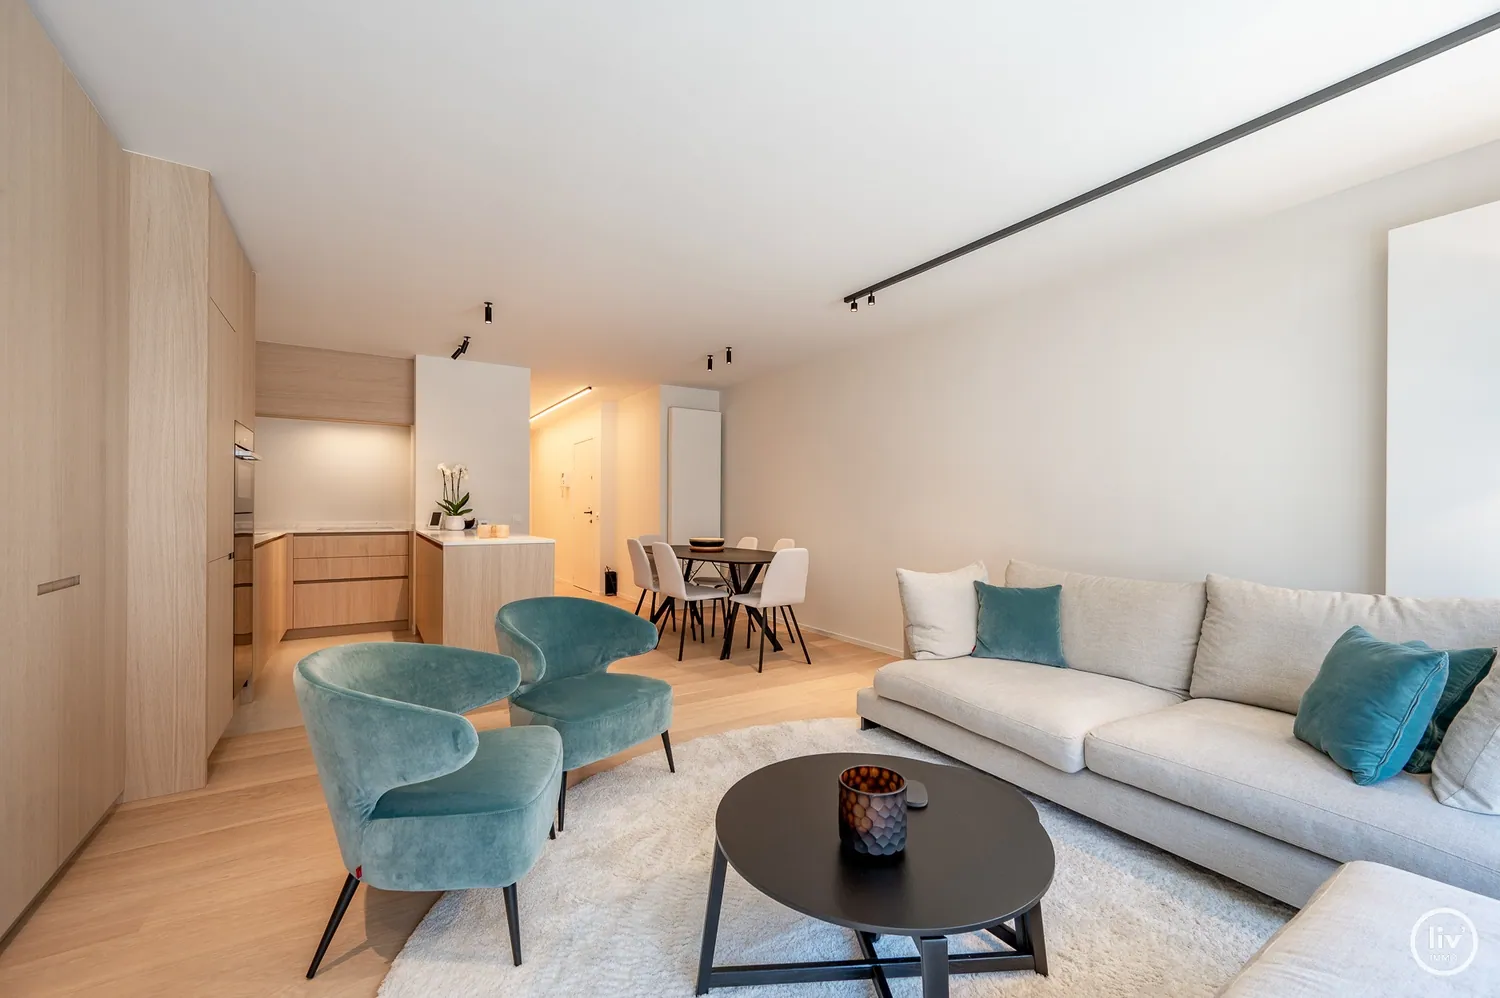 Appartement superbe rénové avec terrasse agréable situé sur l"avenue Leopold à Knokke.